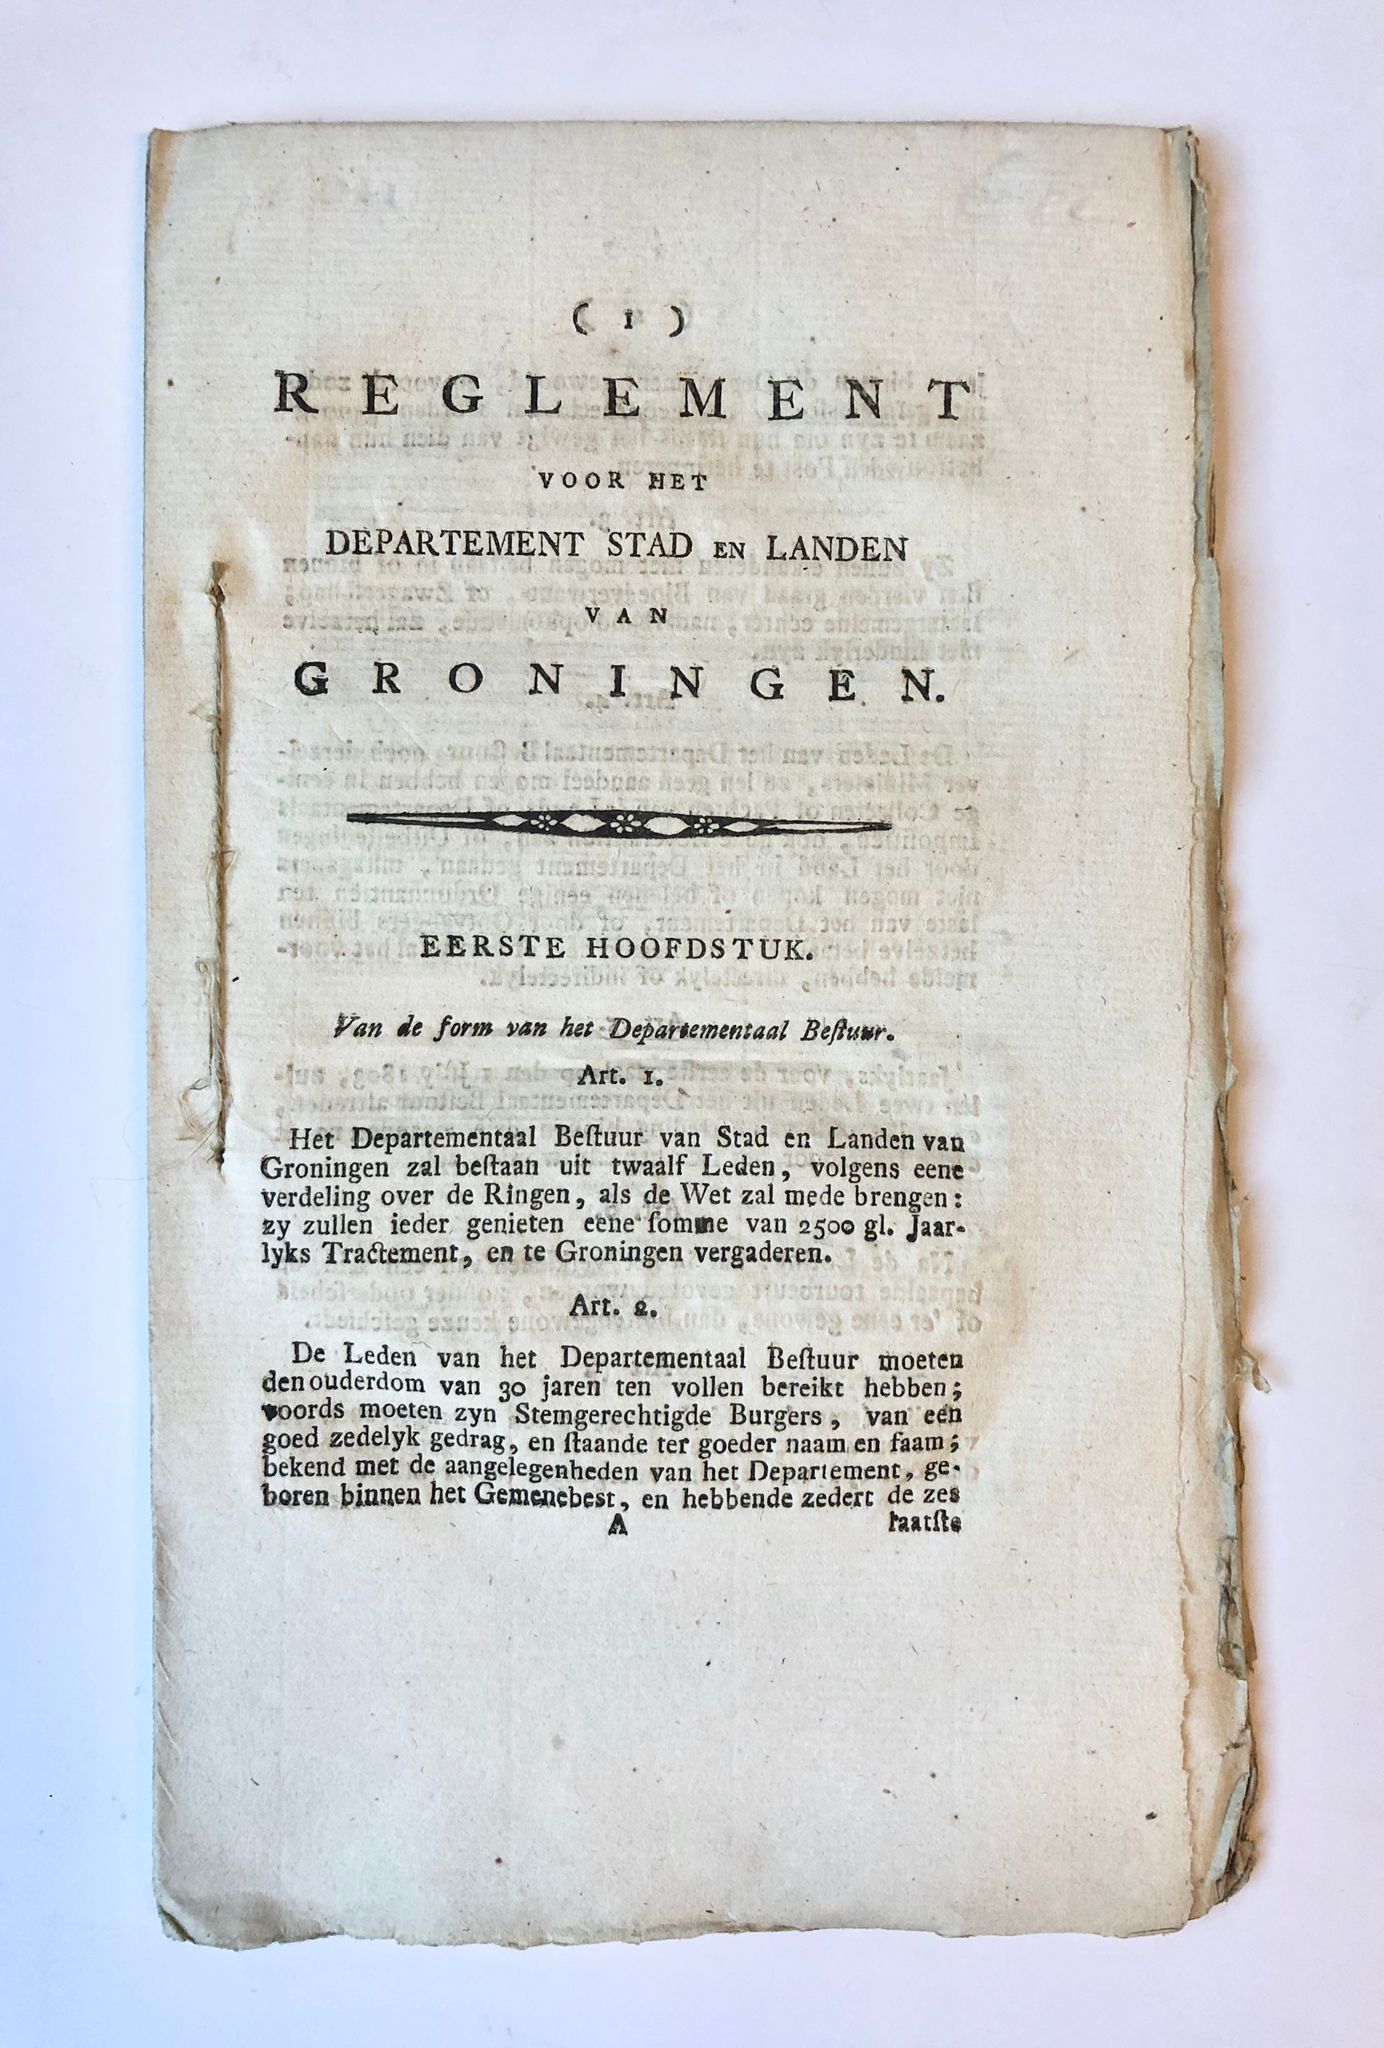 [Groningen, Batavian Republic, [1802]] Reglement voor het departement Stad en Landen van Groningen, [s.n., s.l. [1802], 32 pp.